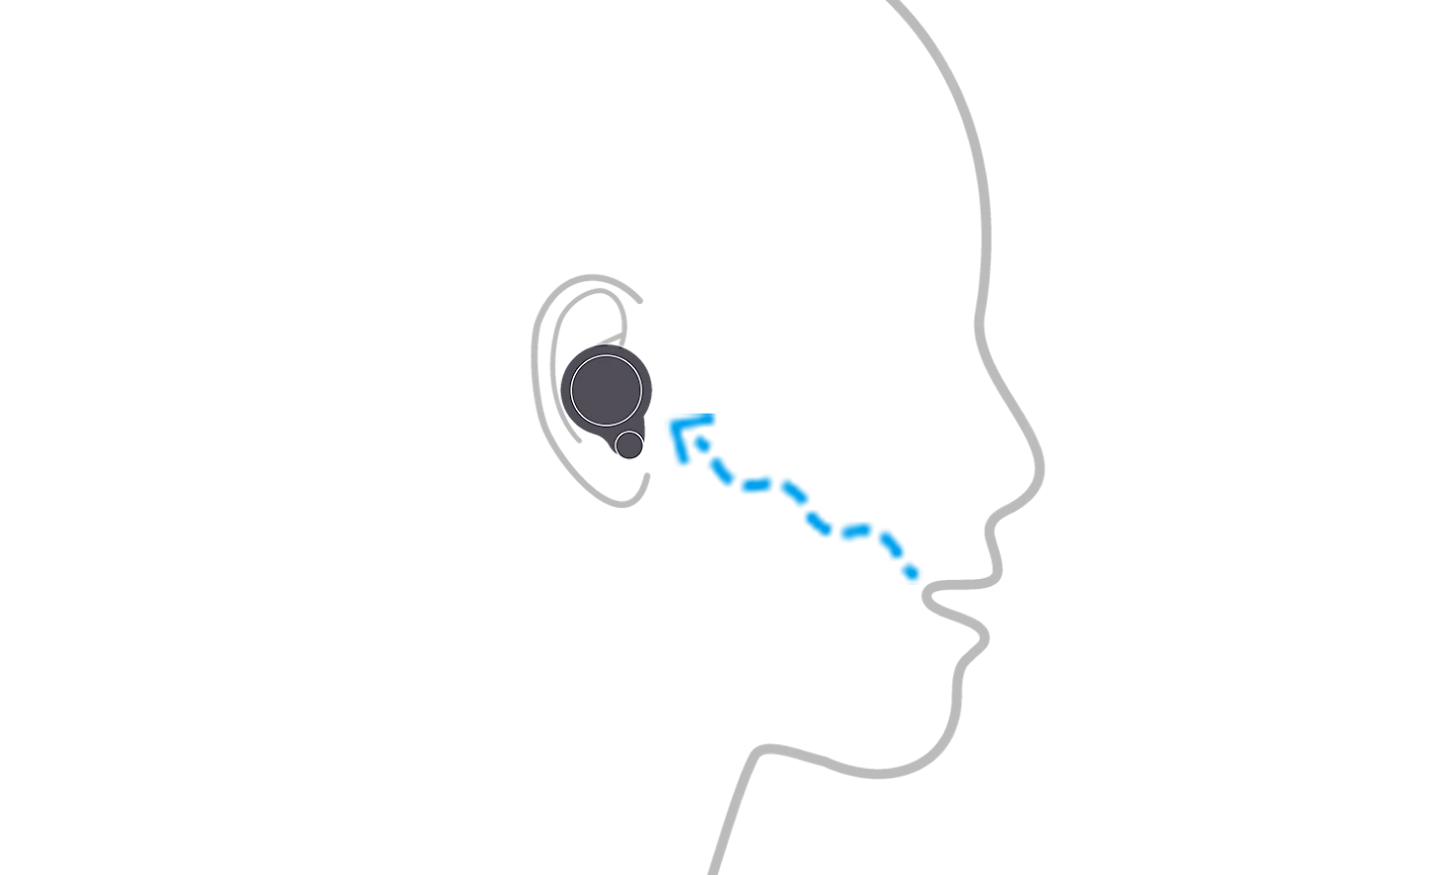 Illustration d'une personne portant les écouteurs WF-1000XM4 montrant comment le capteur à conduction osseuse détecte les vibrations de la voixIllustration d'une personne portant les écouteurs WF-1000XM4 montrant comment le capteur à conduction osseuse détecte les vibrations de la voix